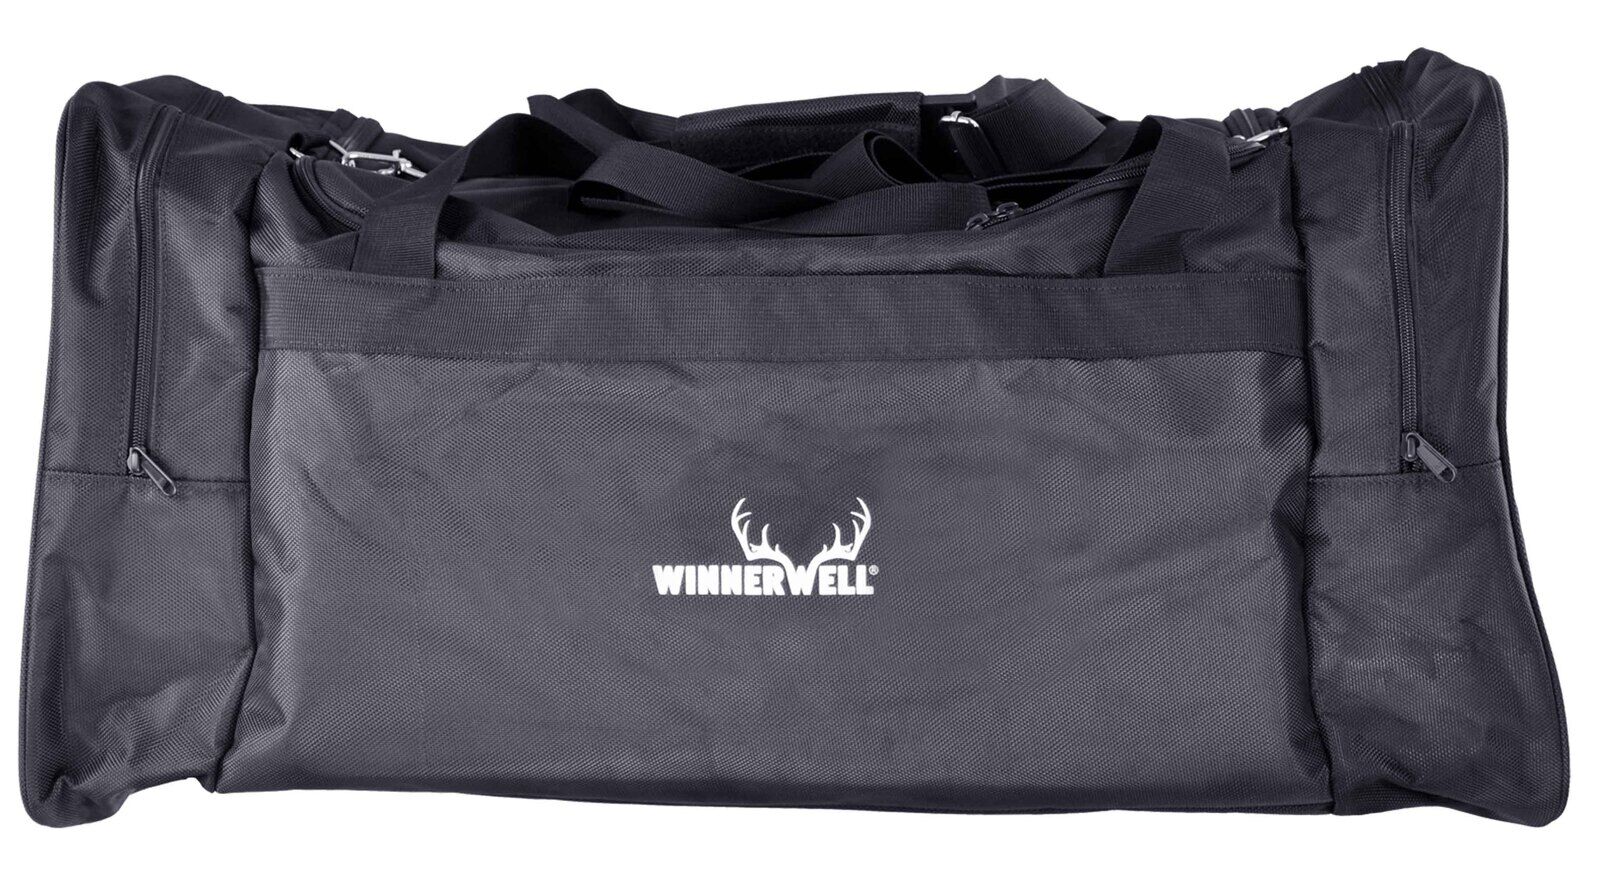 Winnerwell Transporttasche für Nomad oder Woodlander in Gr. L